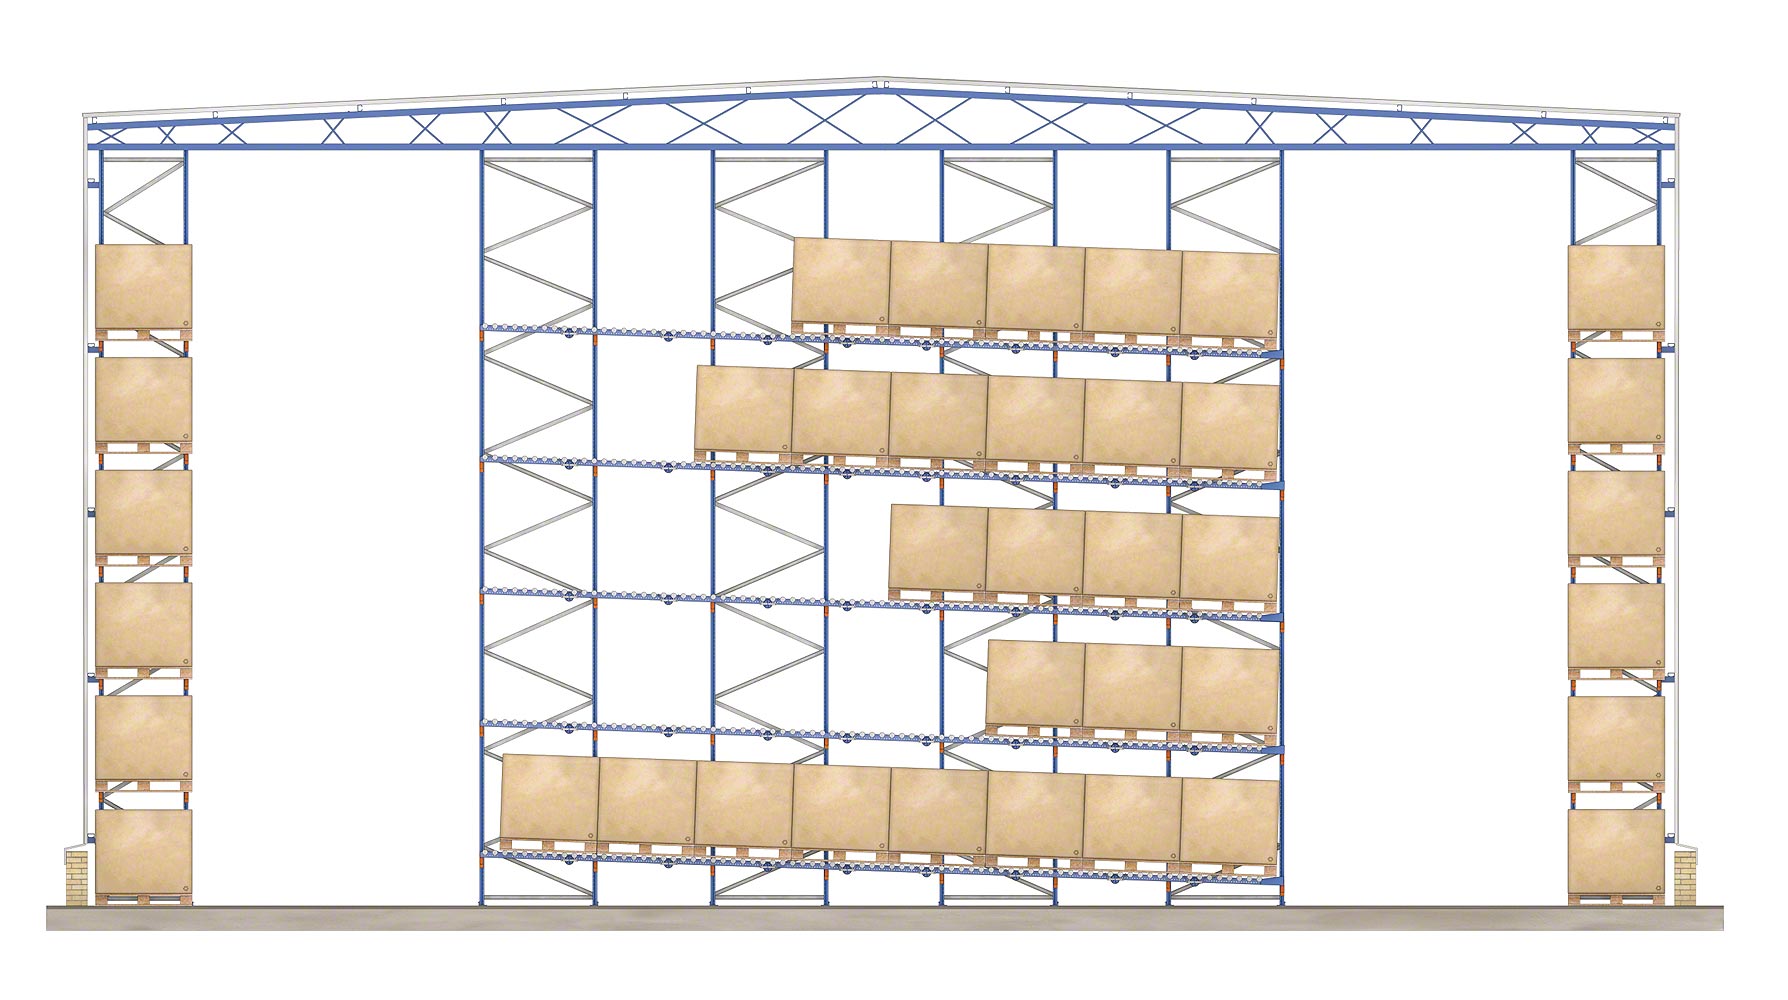 Las estanterías dinámicas pueden constituir un edificio integral o autoportante